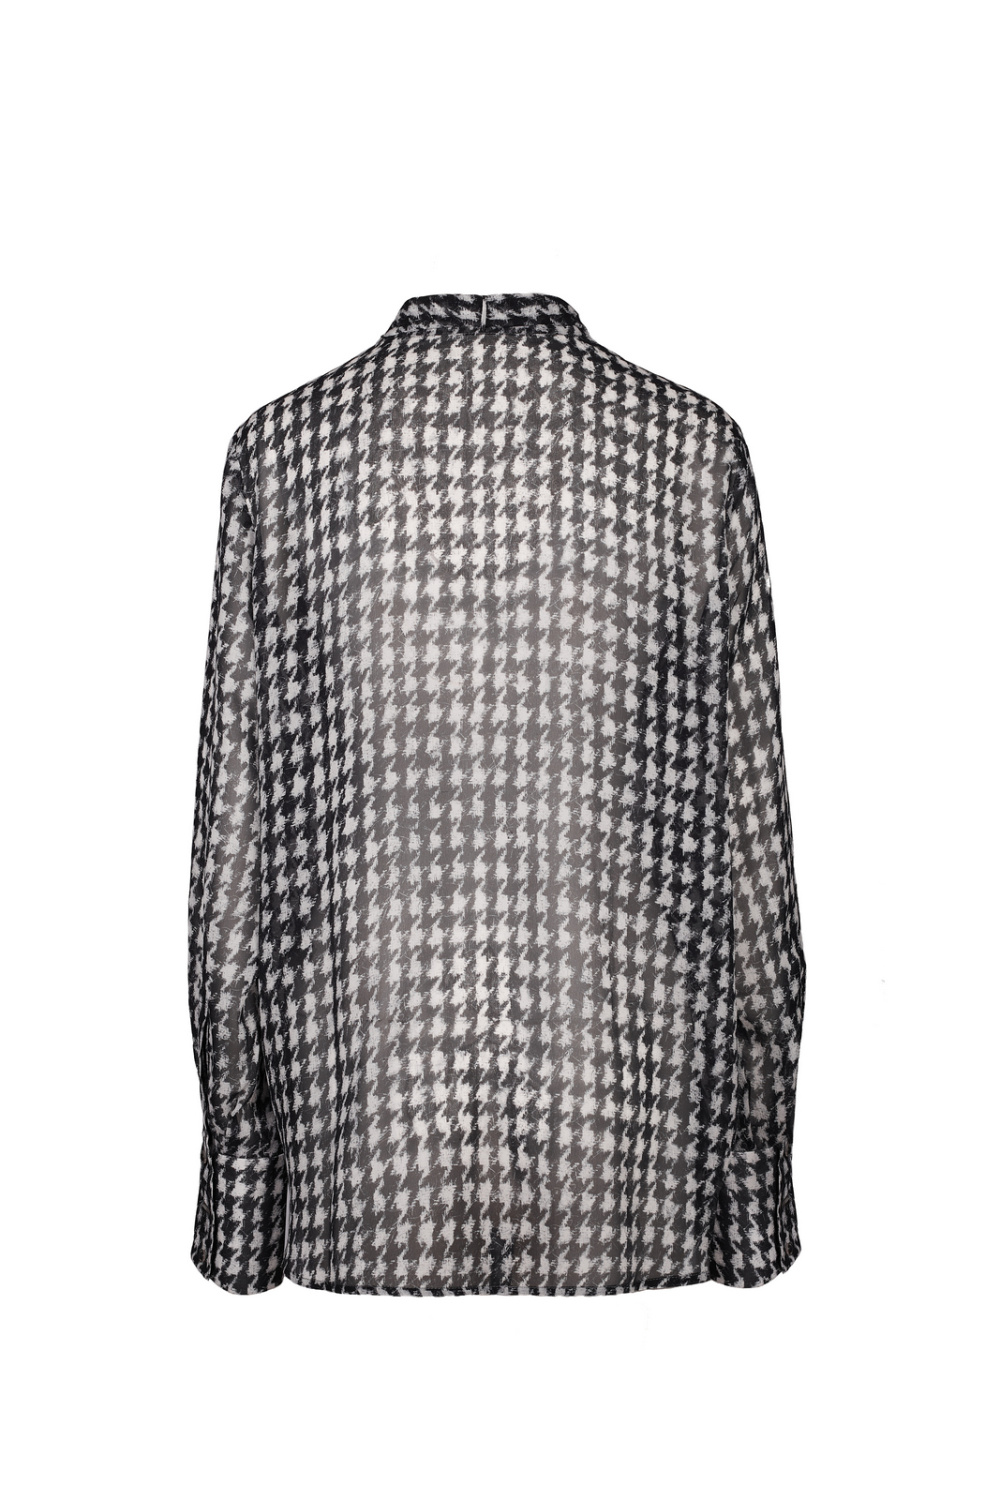 Прозрачная блуза с принтом гусиная лапка 